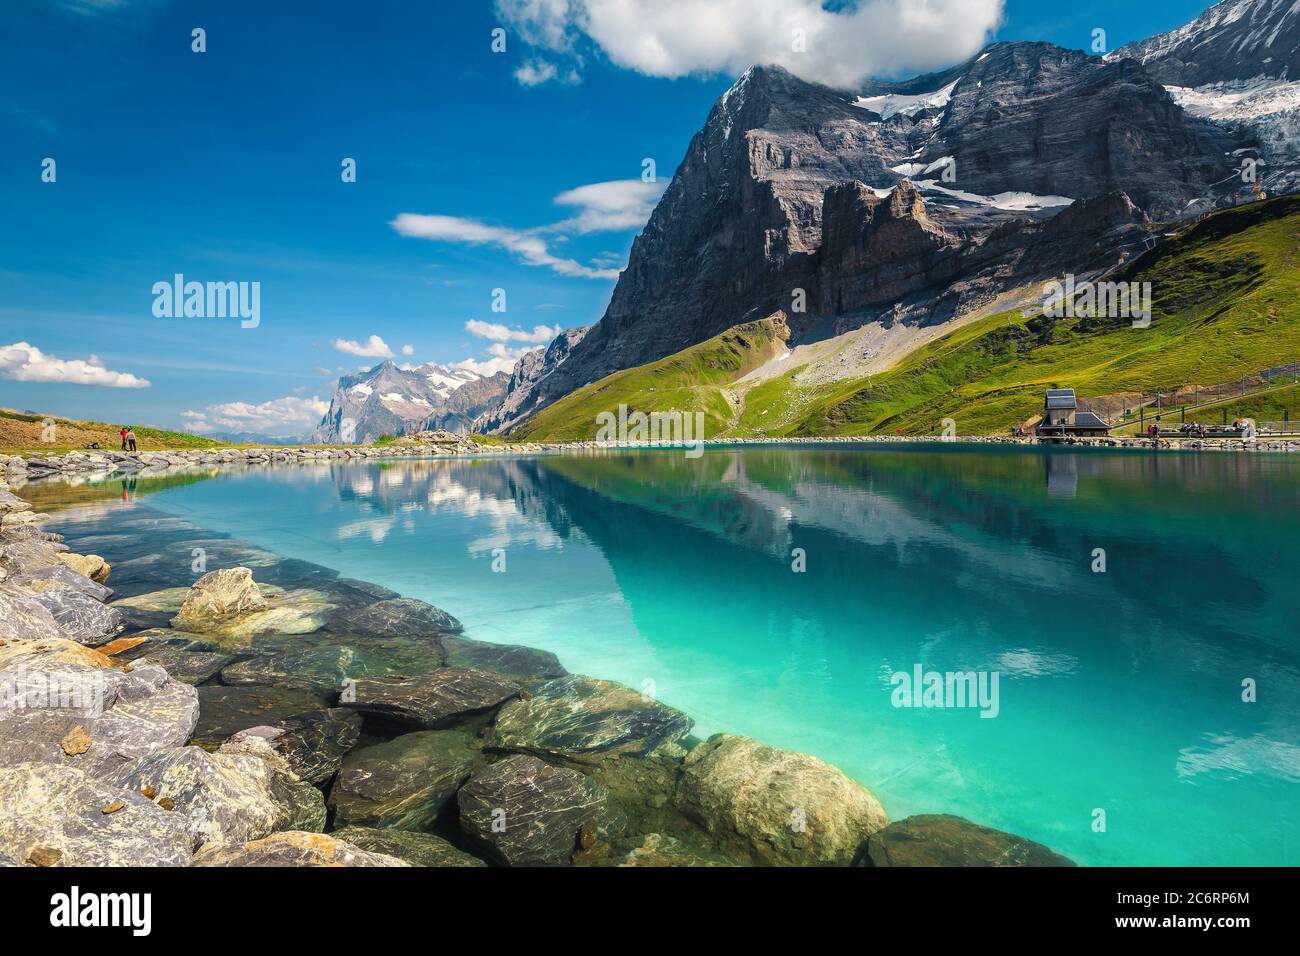 Lago pulito e incredibile con la famosa montagna Eiger. Montagne innevate con ghiacciai e lago Fallbodensee, Grindelwald, Oberland Bernese, Svizzera, UE Foto Stock